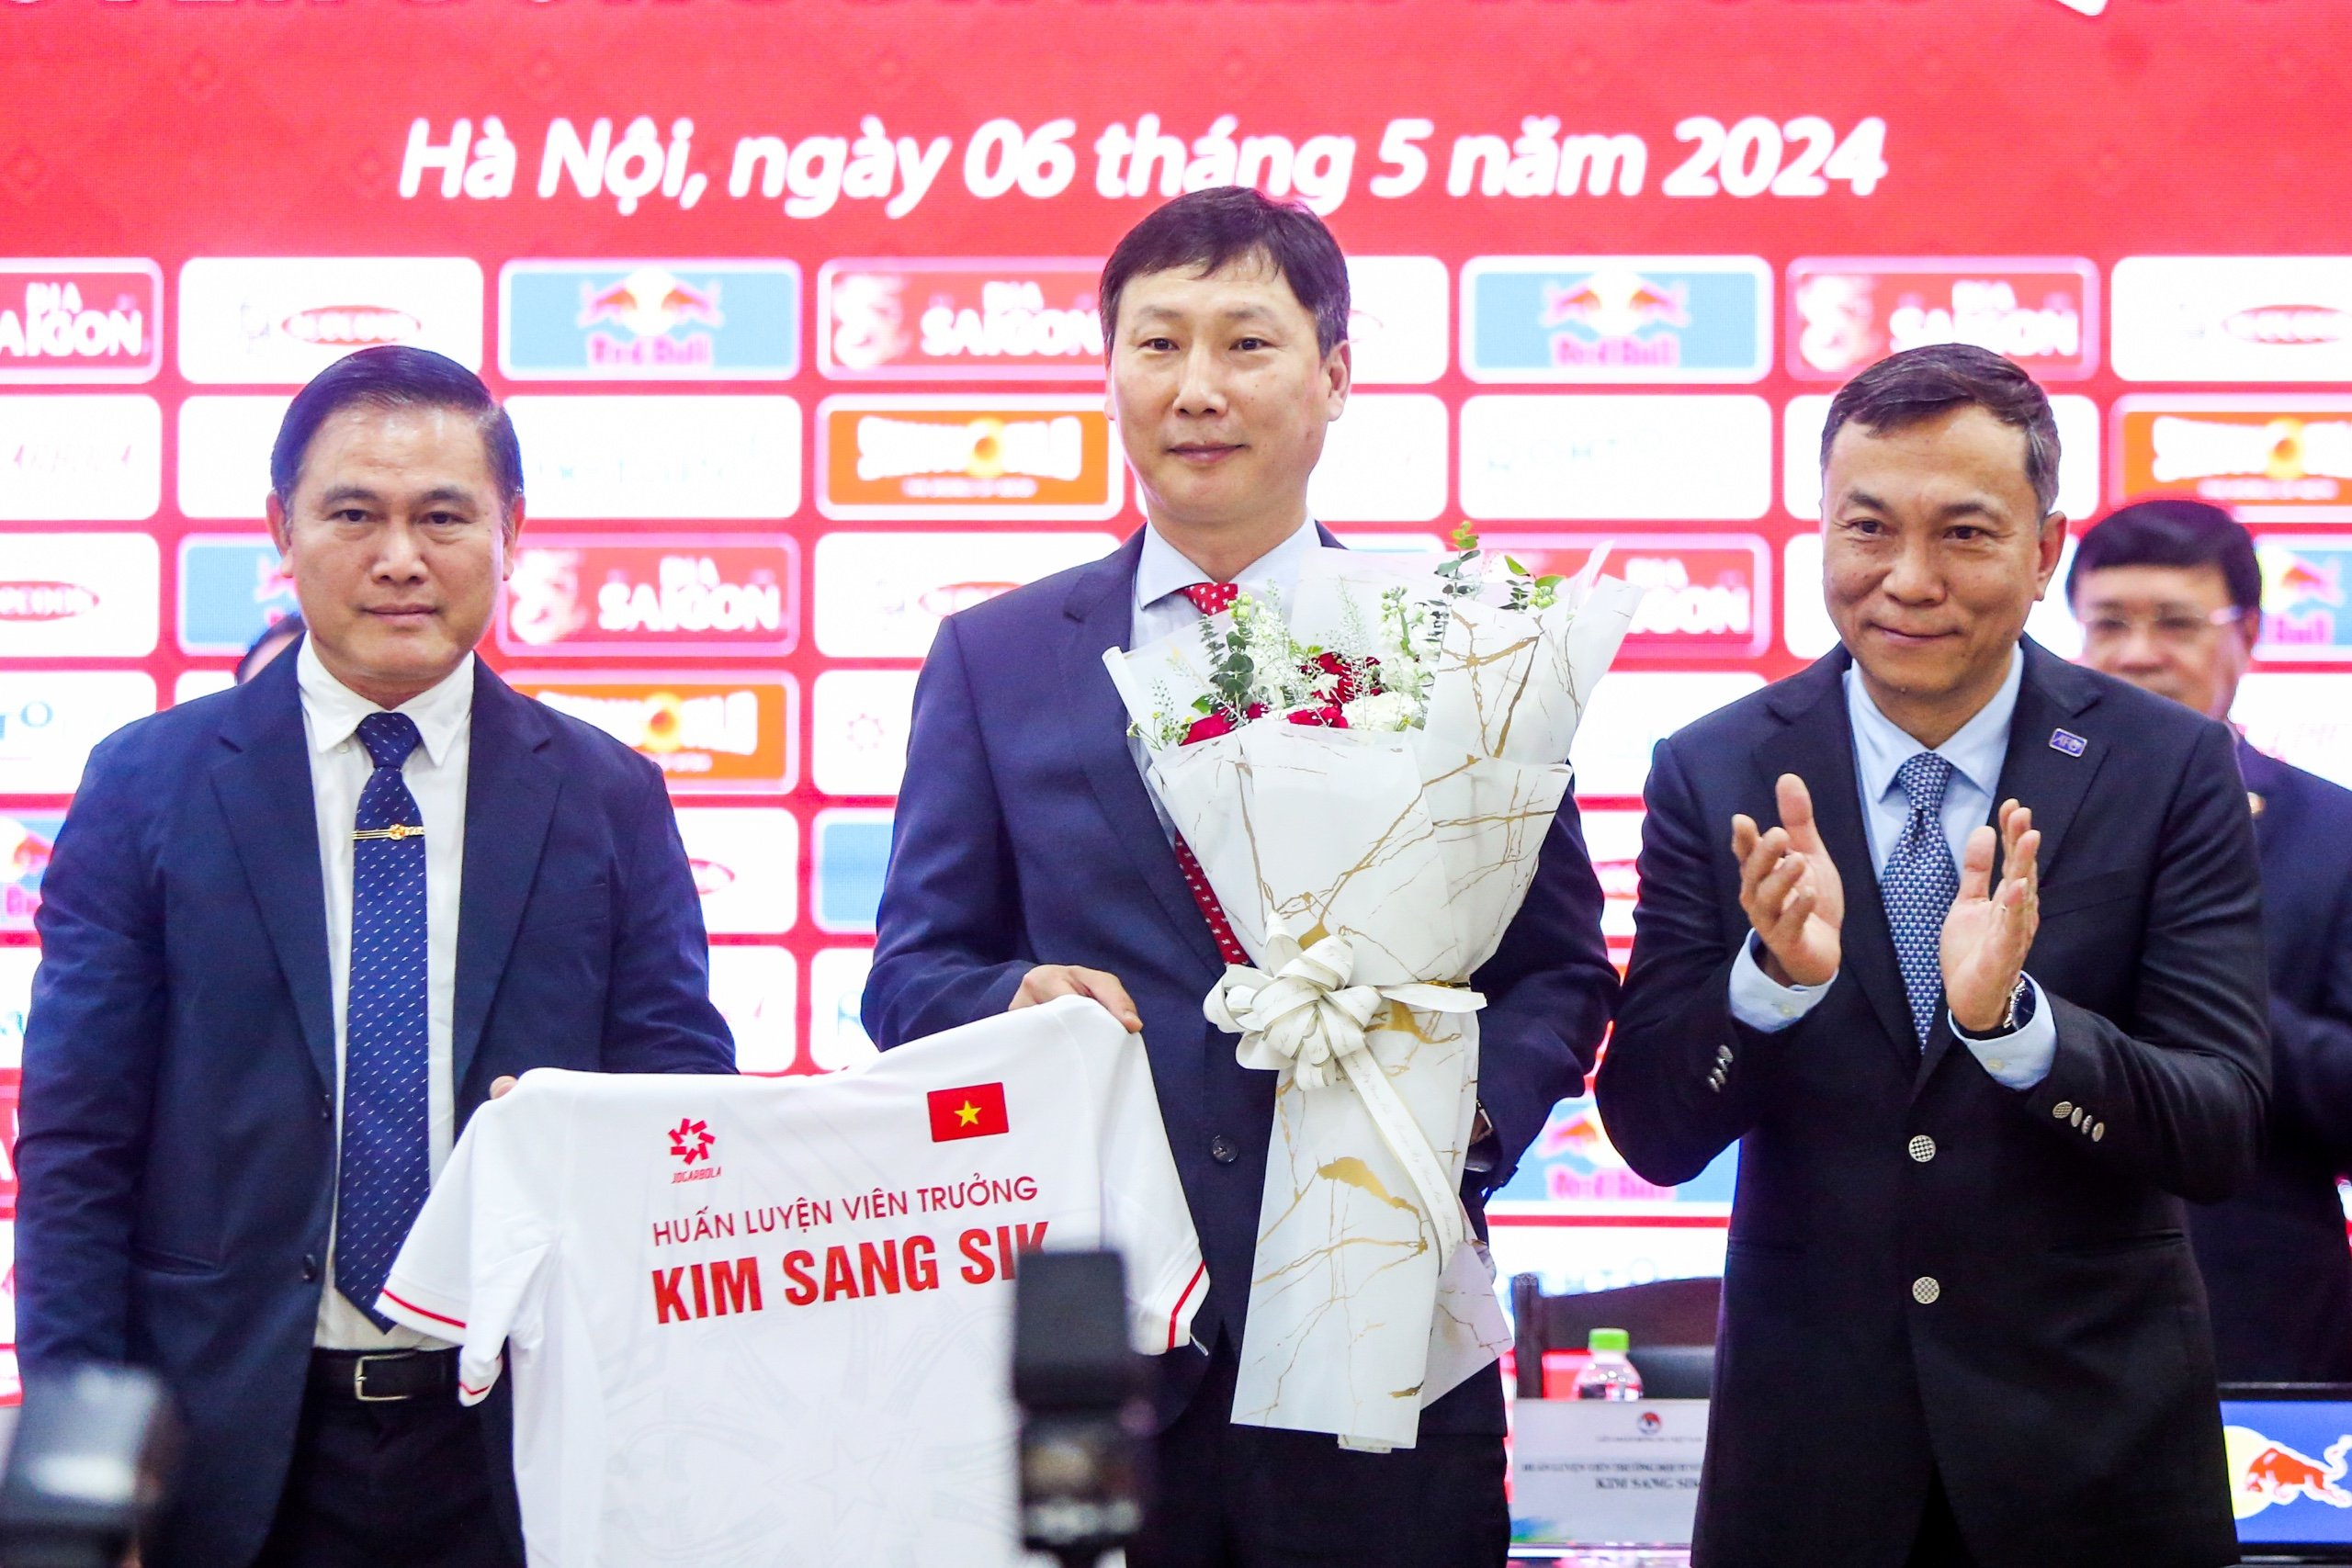 HLV Kim Sang Sik: ‘Triết lý của tôi là lòng trung thành, bóng đá chiến thắng’ - Ảnh 2.